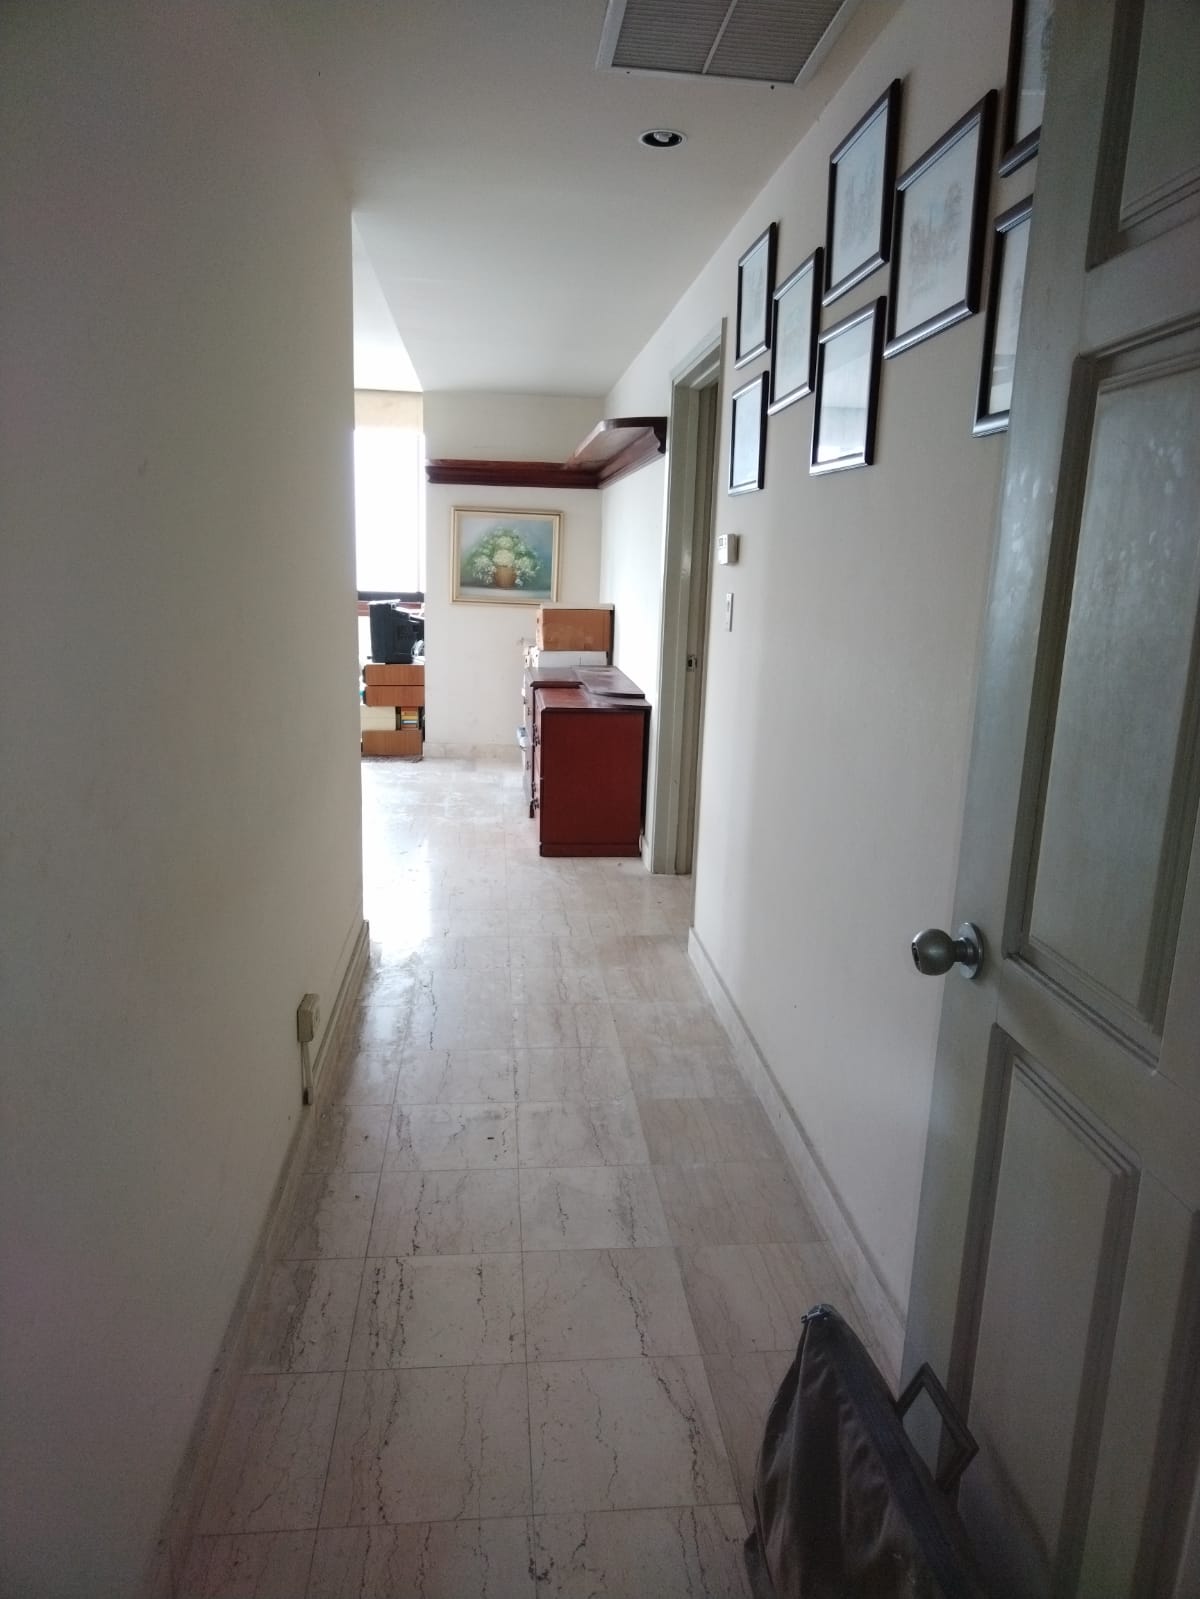 Venta de apartamento de 4 recamaras, 4 baños, ubicado en Bella Vista Panamá